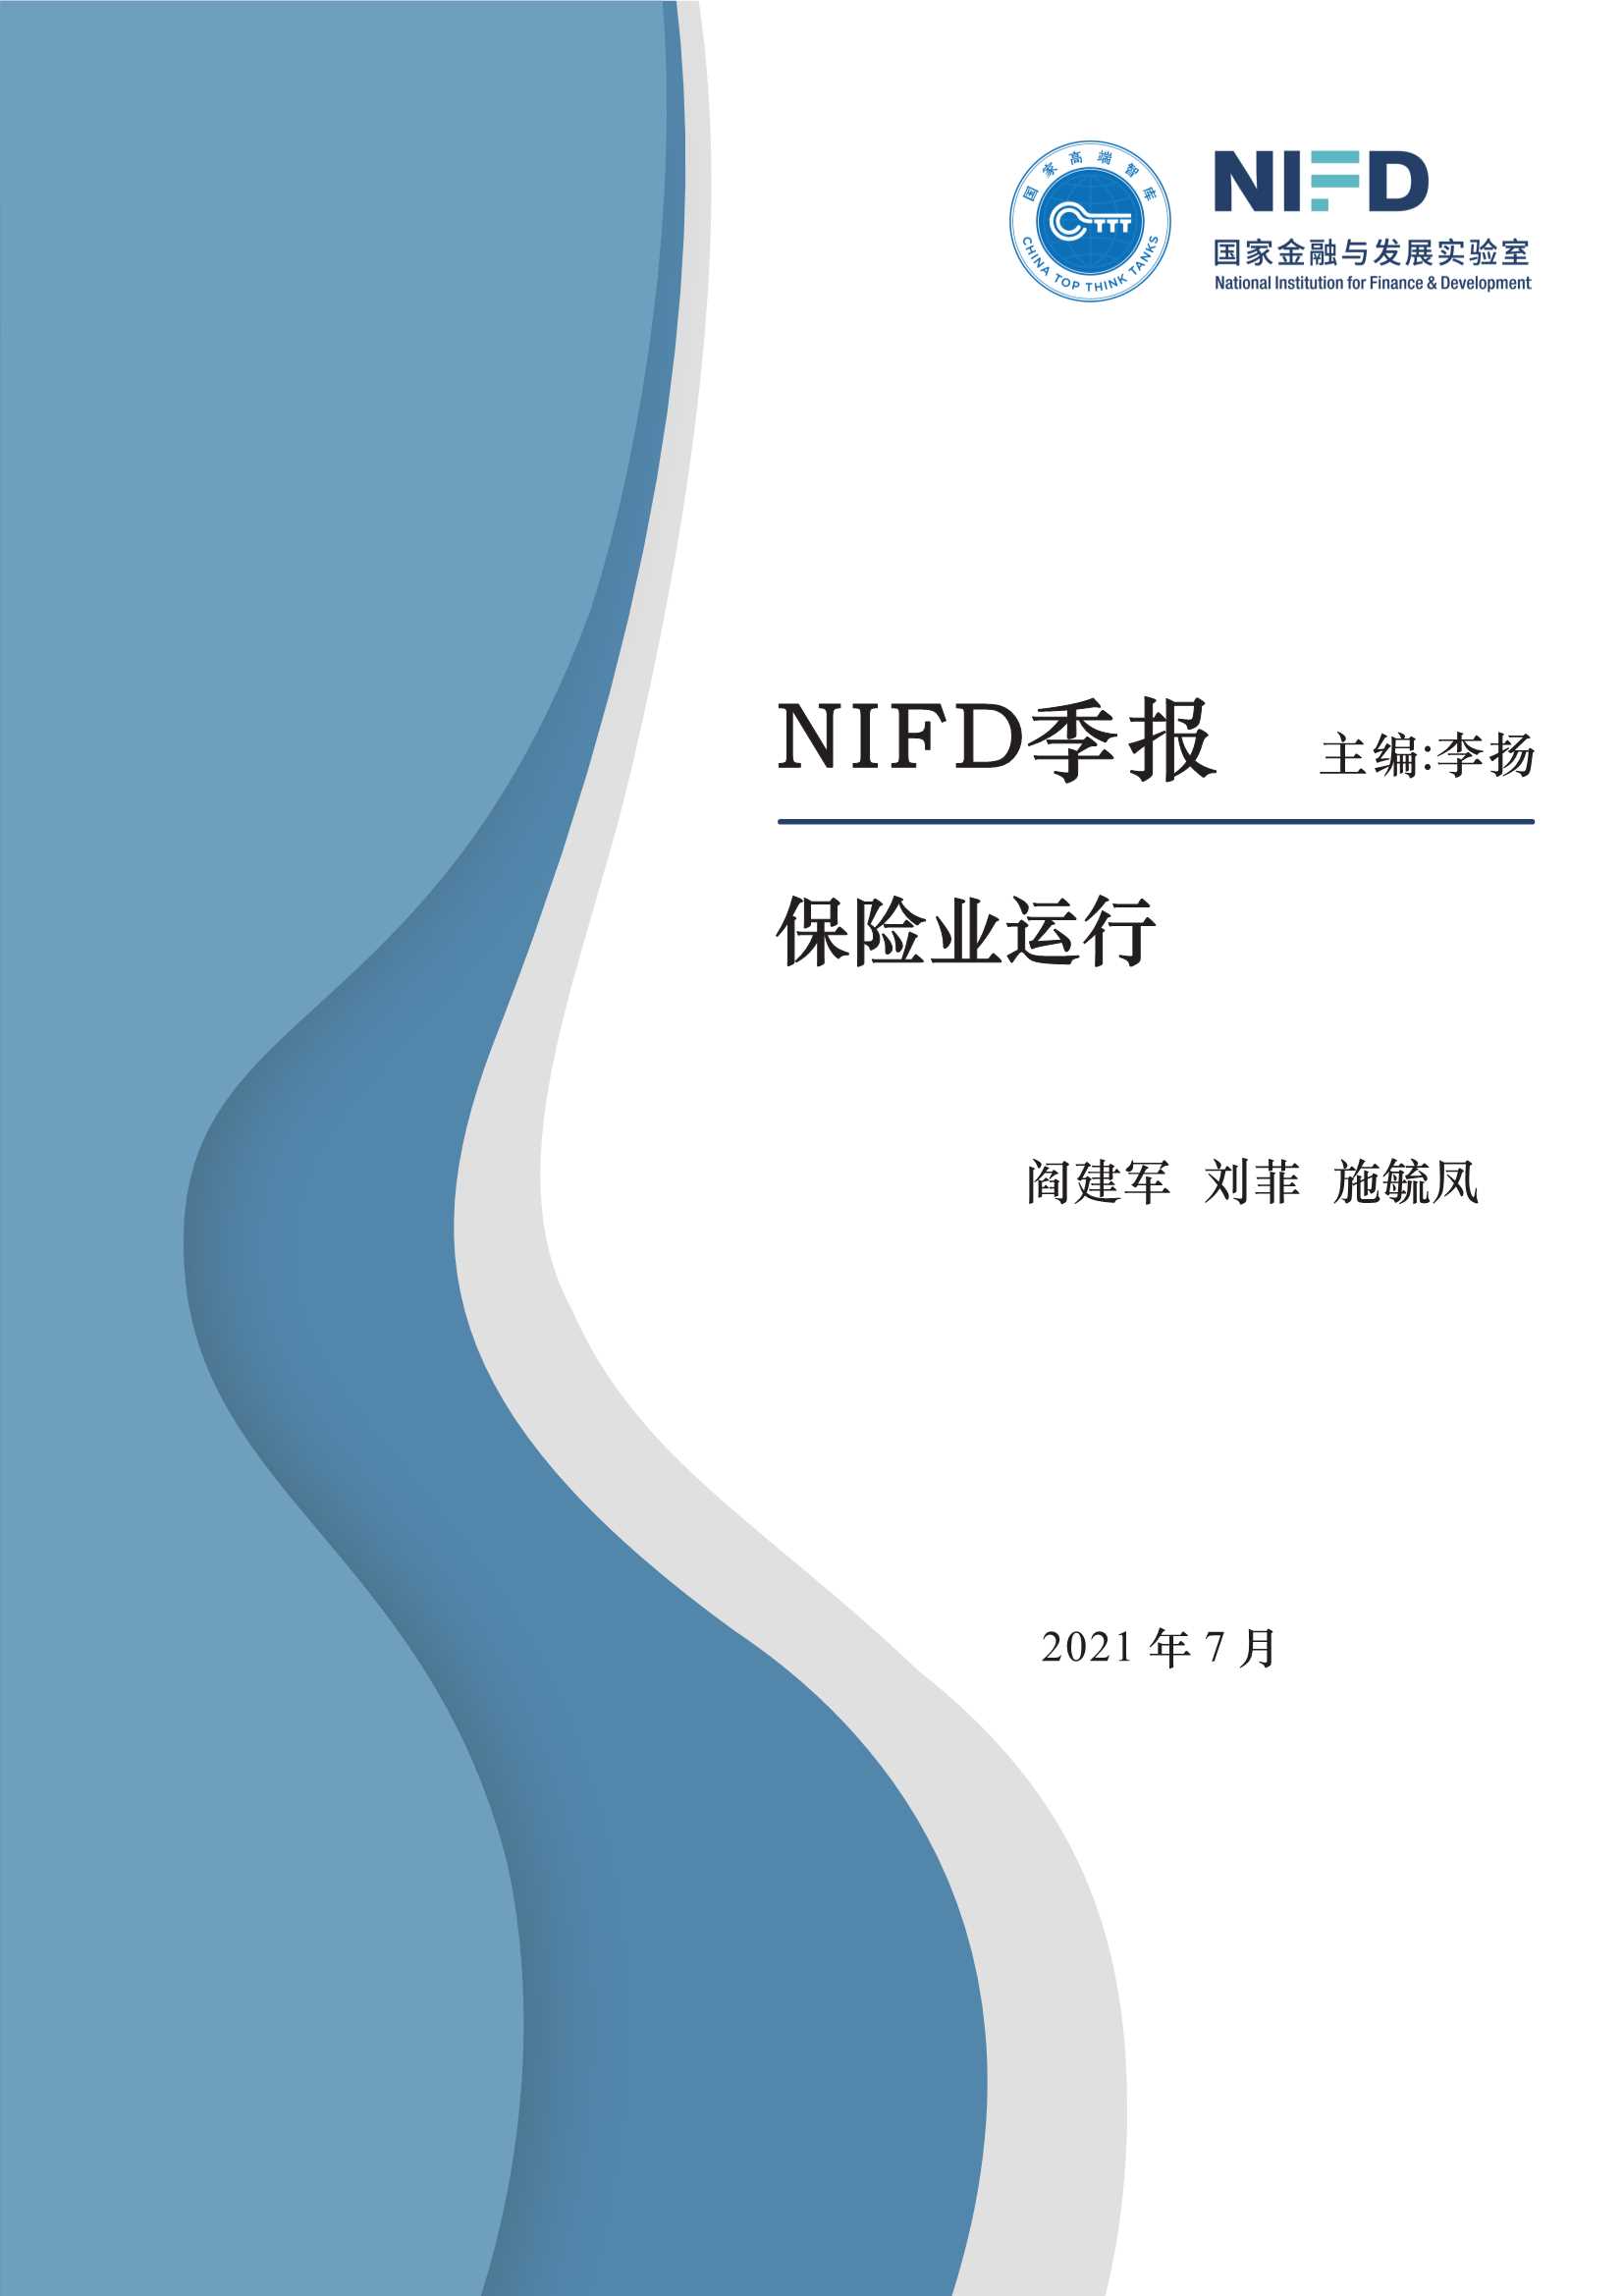 NIFD-2021Q2保险业运行-2021.07-17页